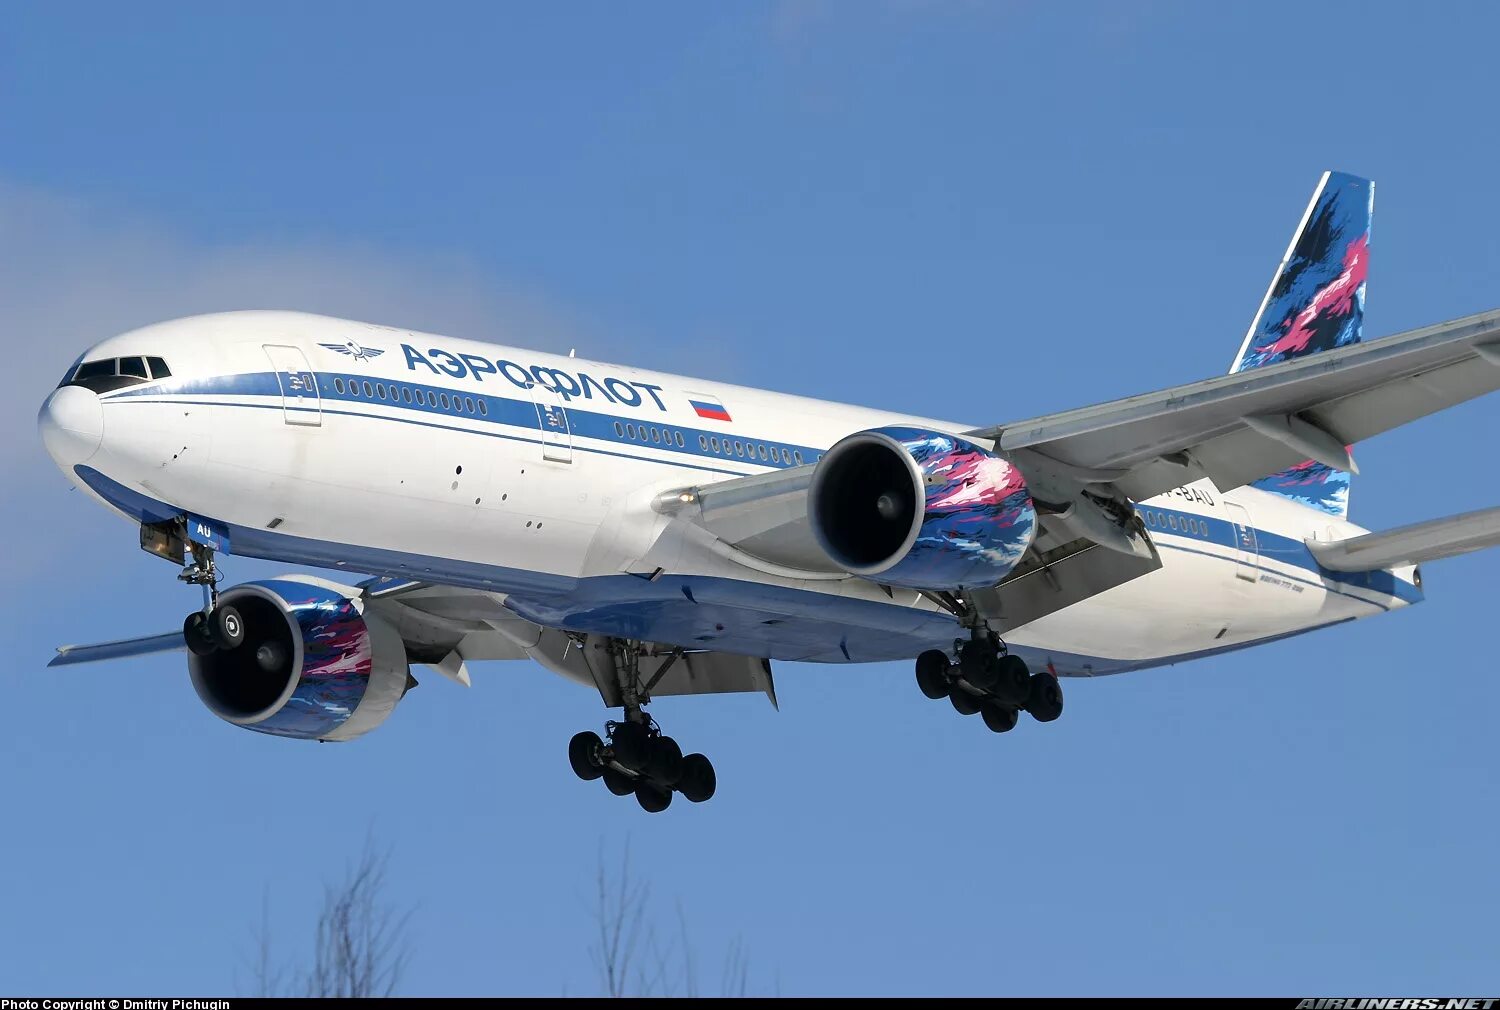 Боинг 777 200. Боинг 777-200 "Аэрофлот". Боинг 777 200 Аэрофлот 2004. Boeing 777 Aeroflot 1999. VP-Bau.